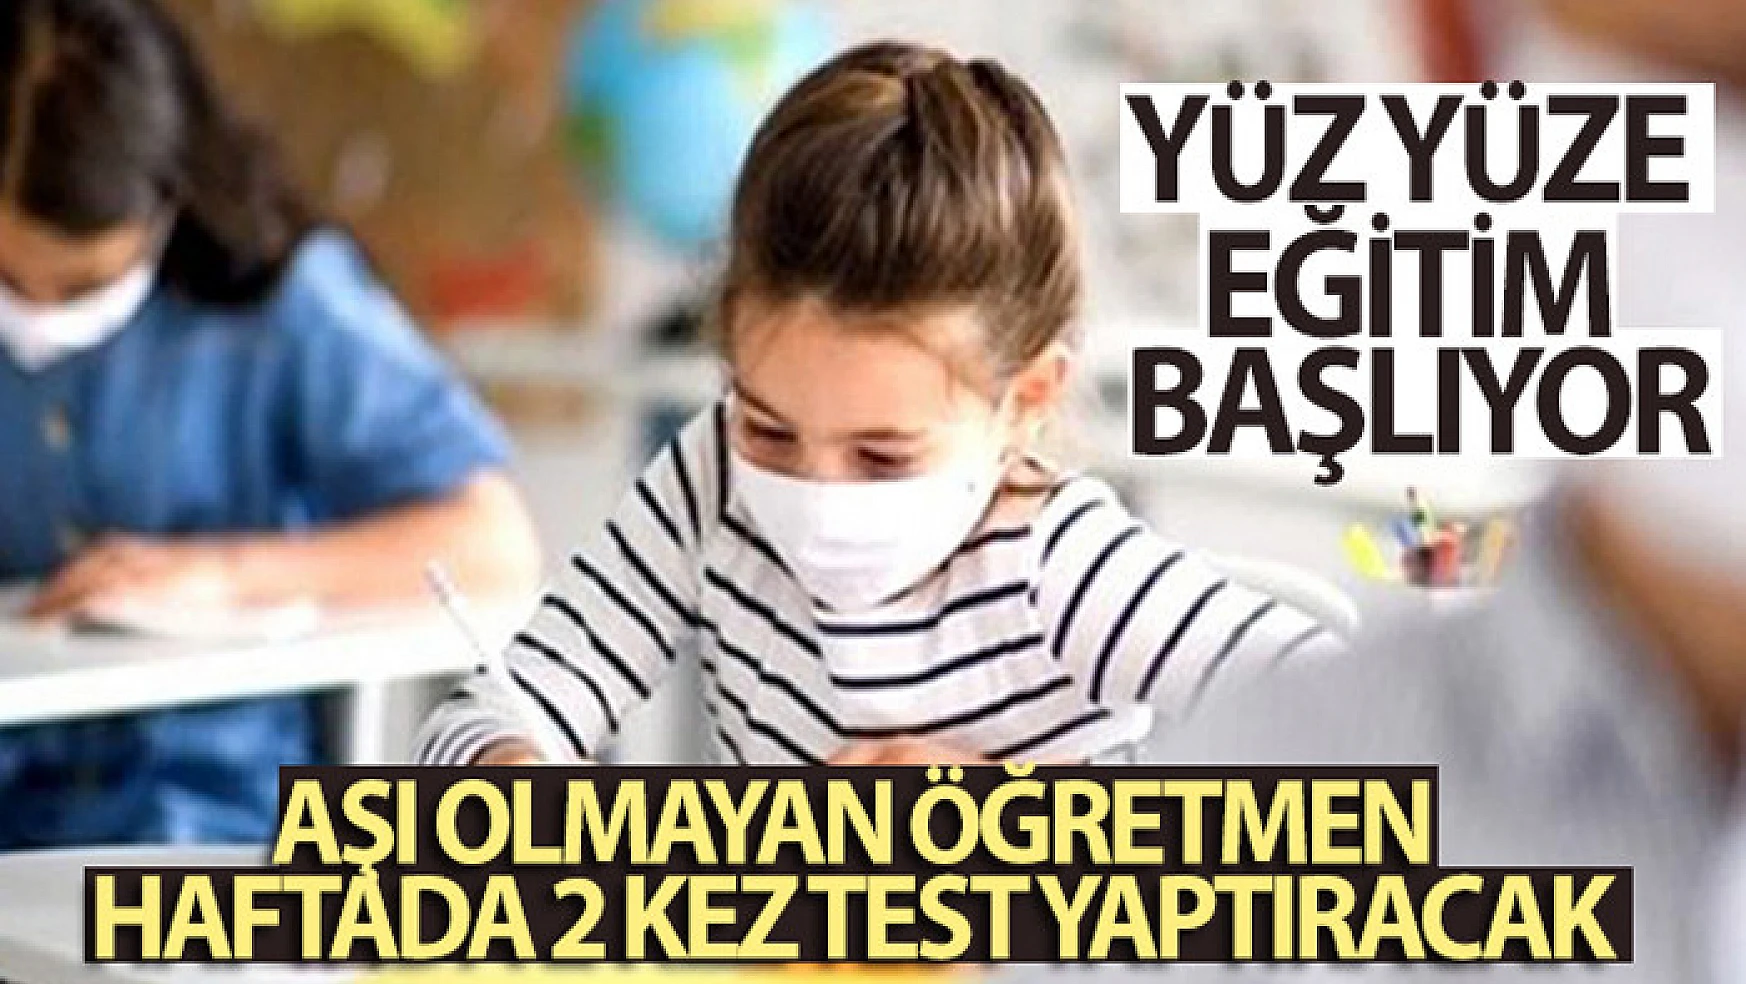 Cumhurbaşkanı Erdoğan açıkladı! Aşı olmayan öğretmen haftada 2 kez test yaptıracak